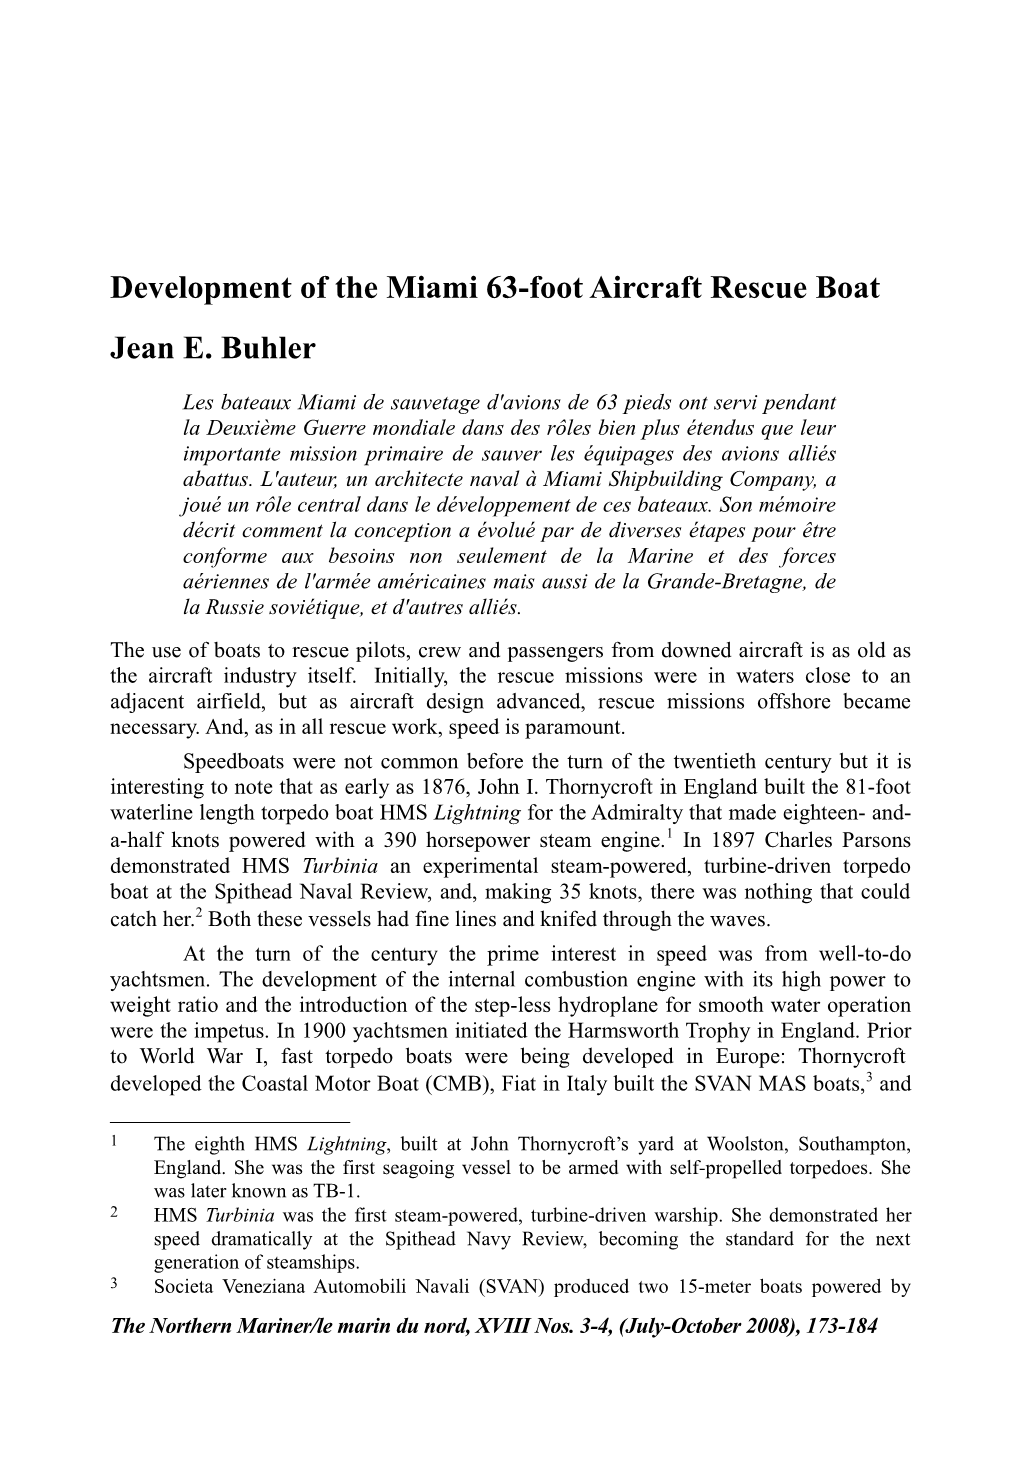 Development of the Miami 63-Foot Aircraft Rescue Boat Jean E. Buhler